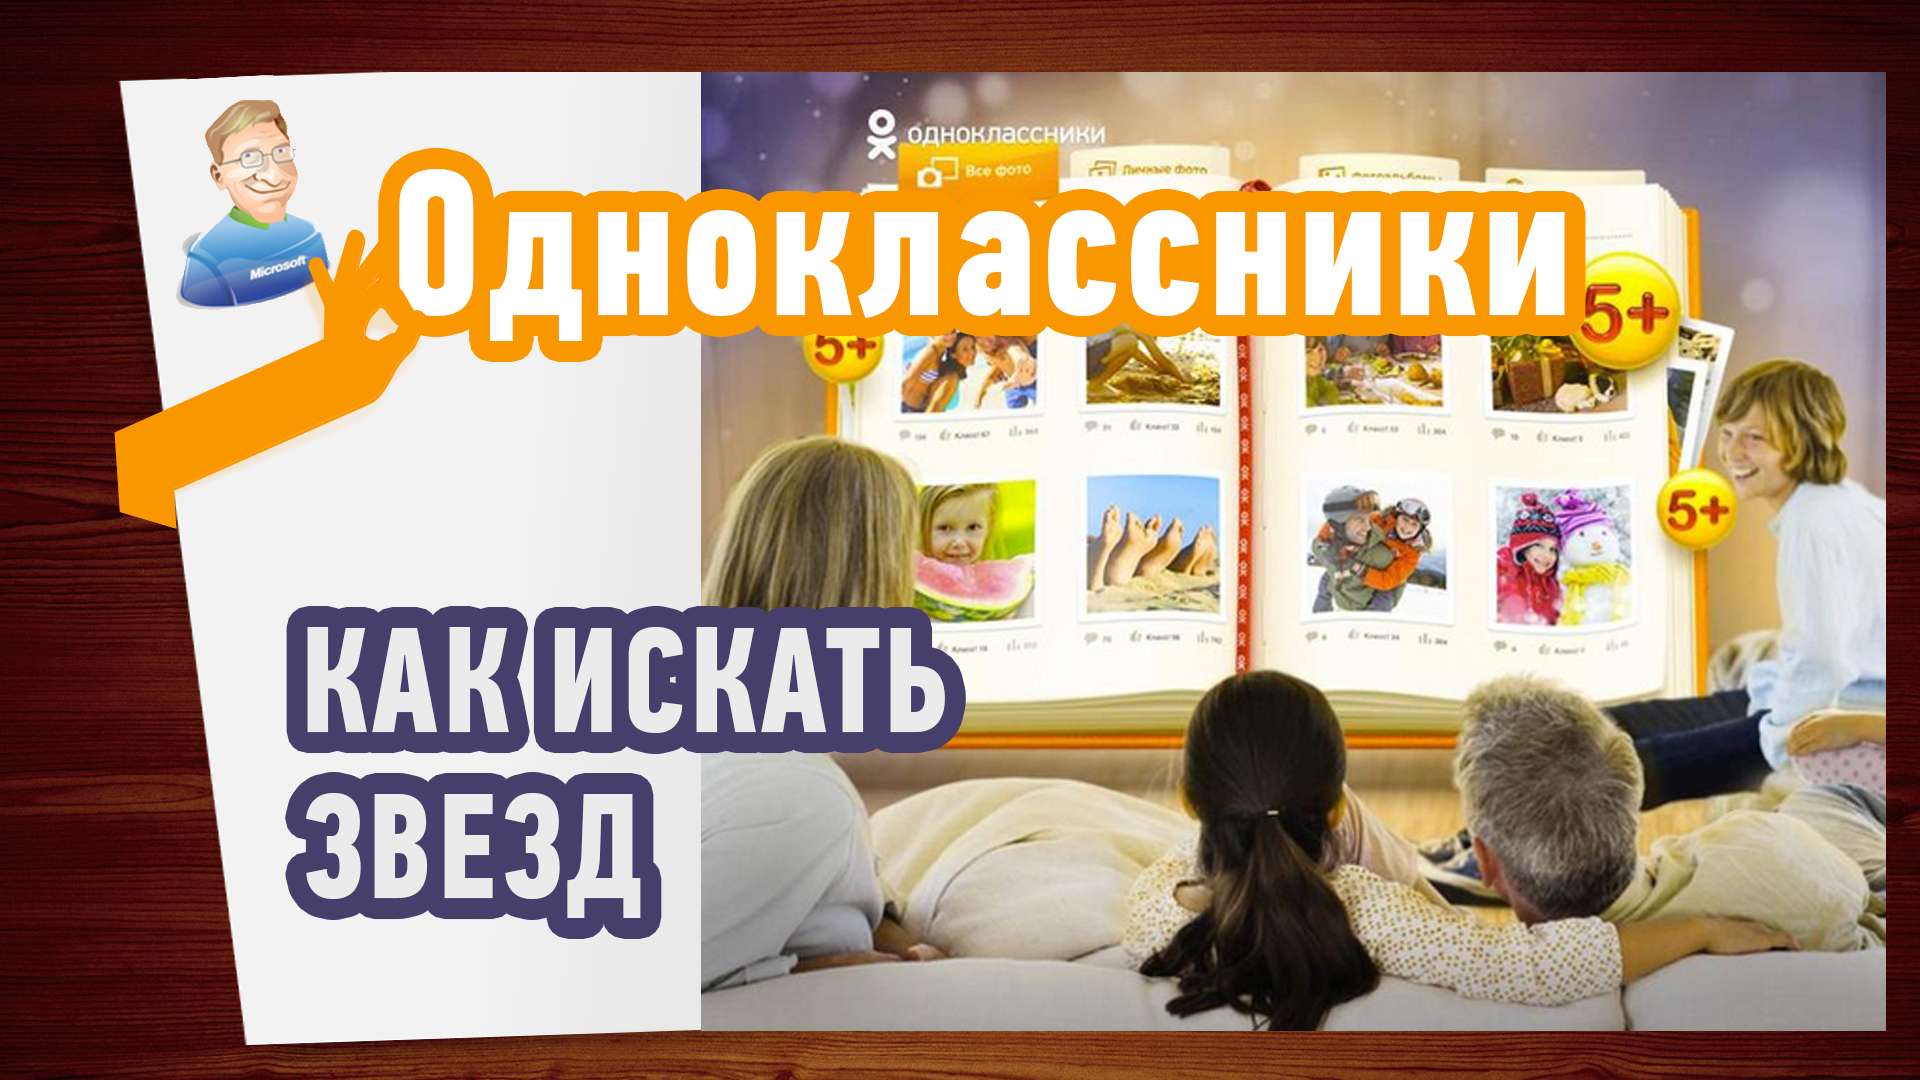 Как искать звезд и знаменитостей в Одноклассниках